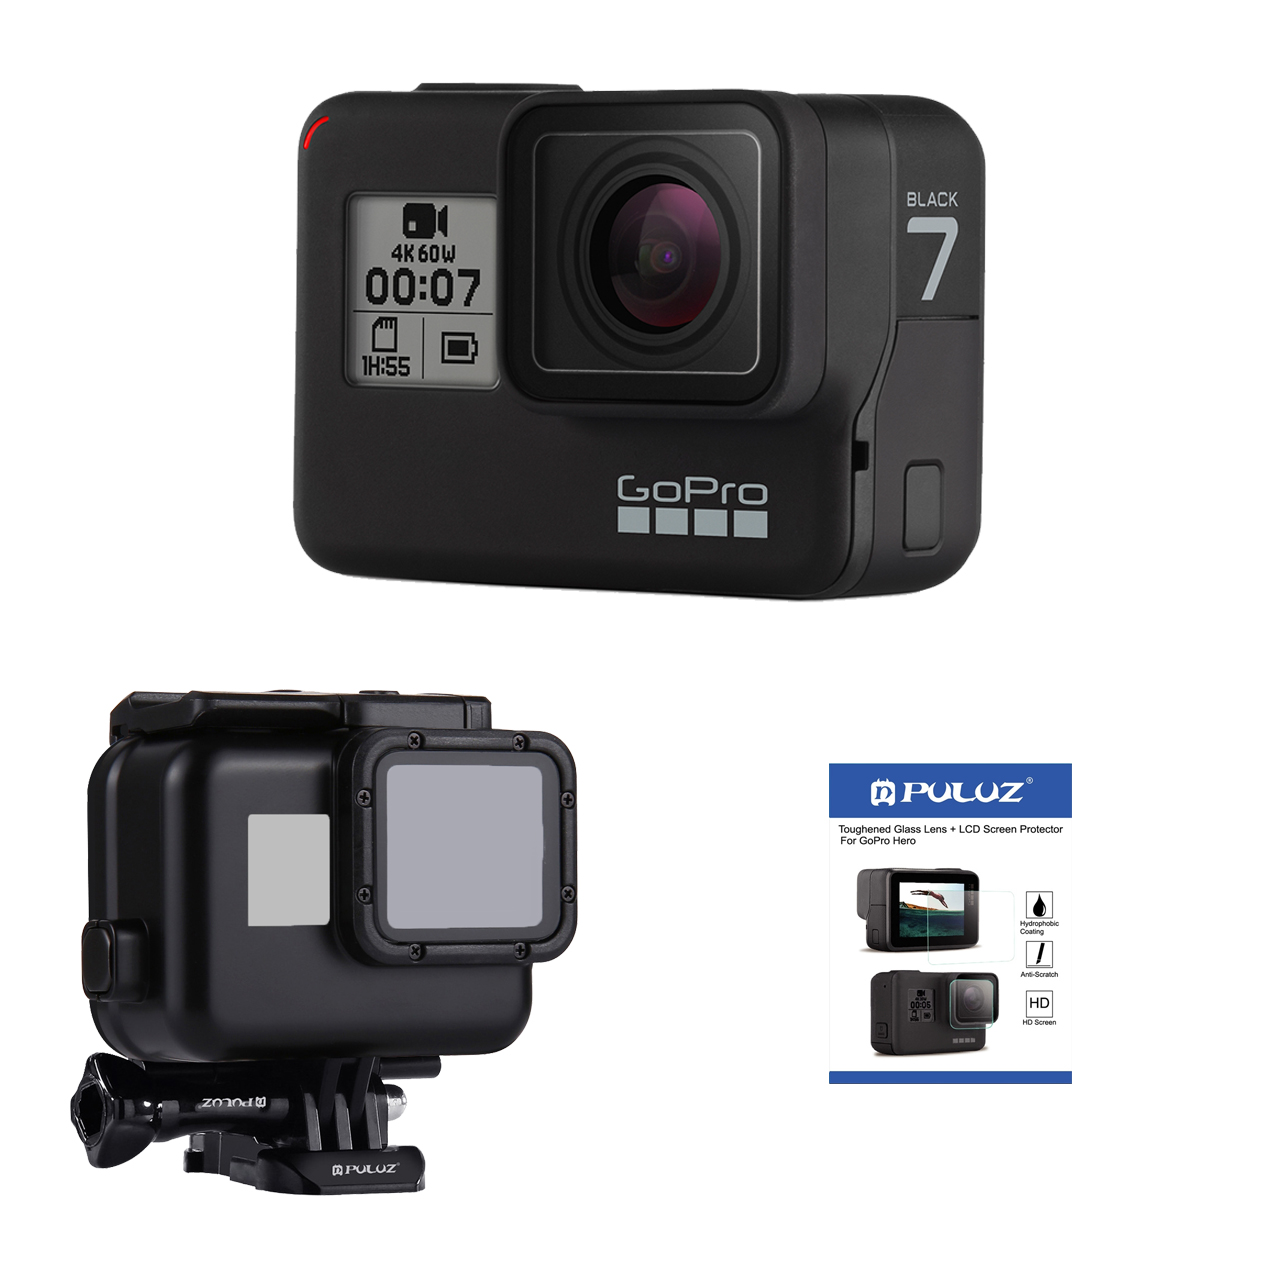  دوربین فیلم برداری ورزشی گوپرو مدل HERO7 Black Quick Stories به همراه لوازم جانبی پلوز